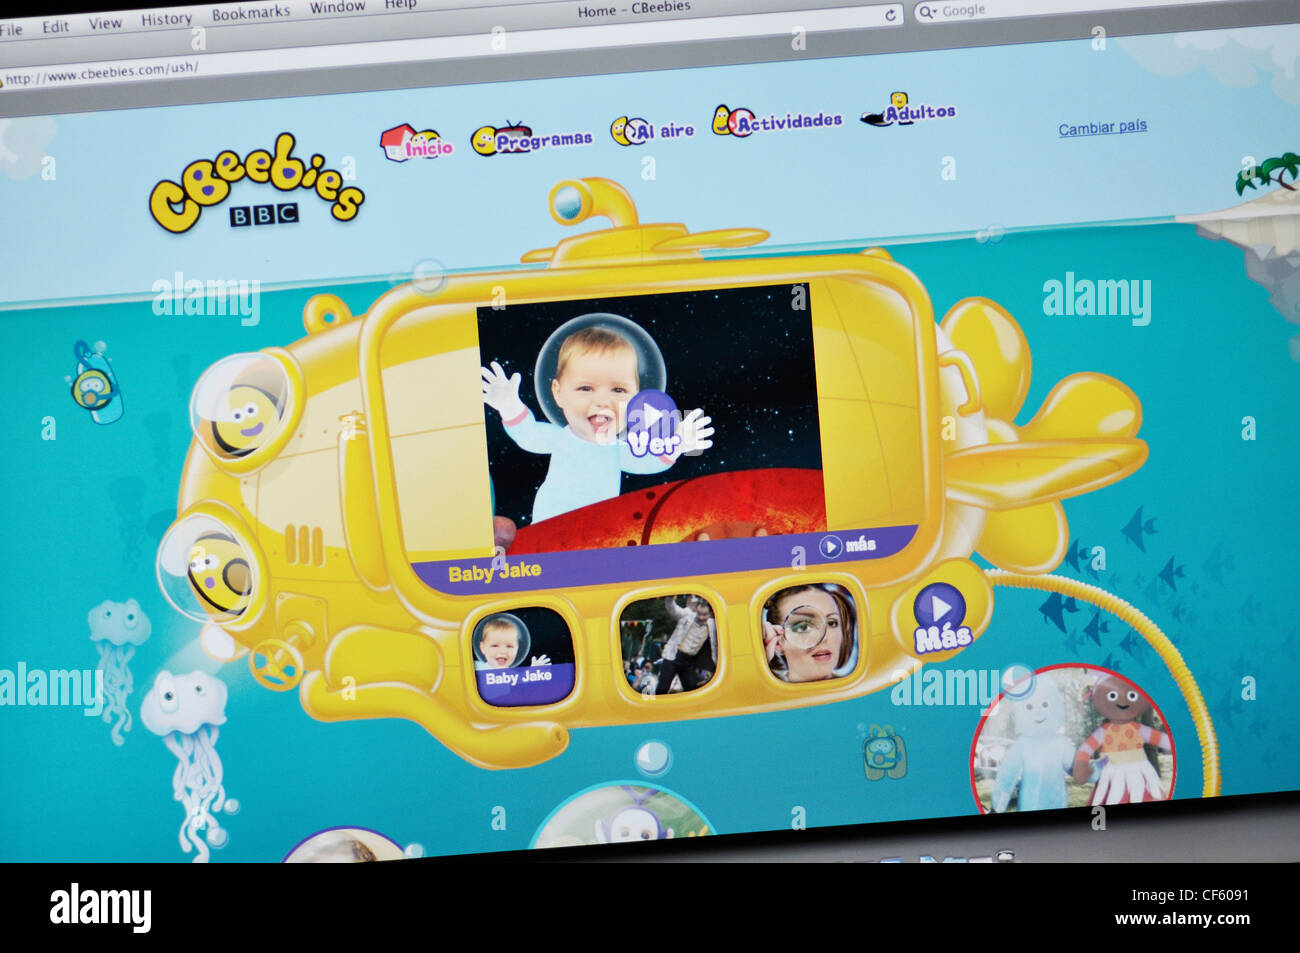 Cbeebies  Children's Games website Stock Photo